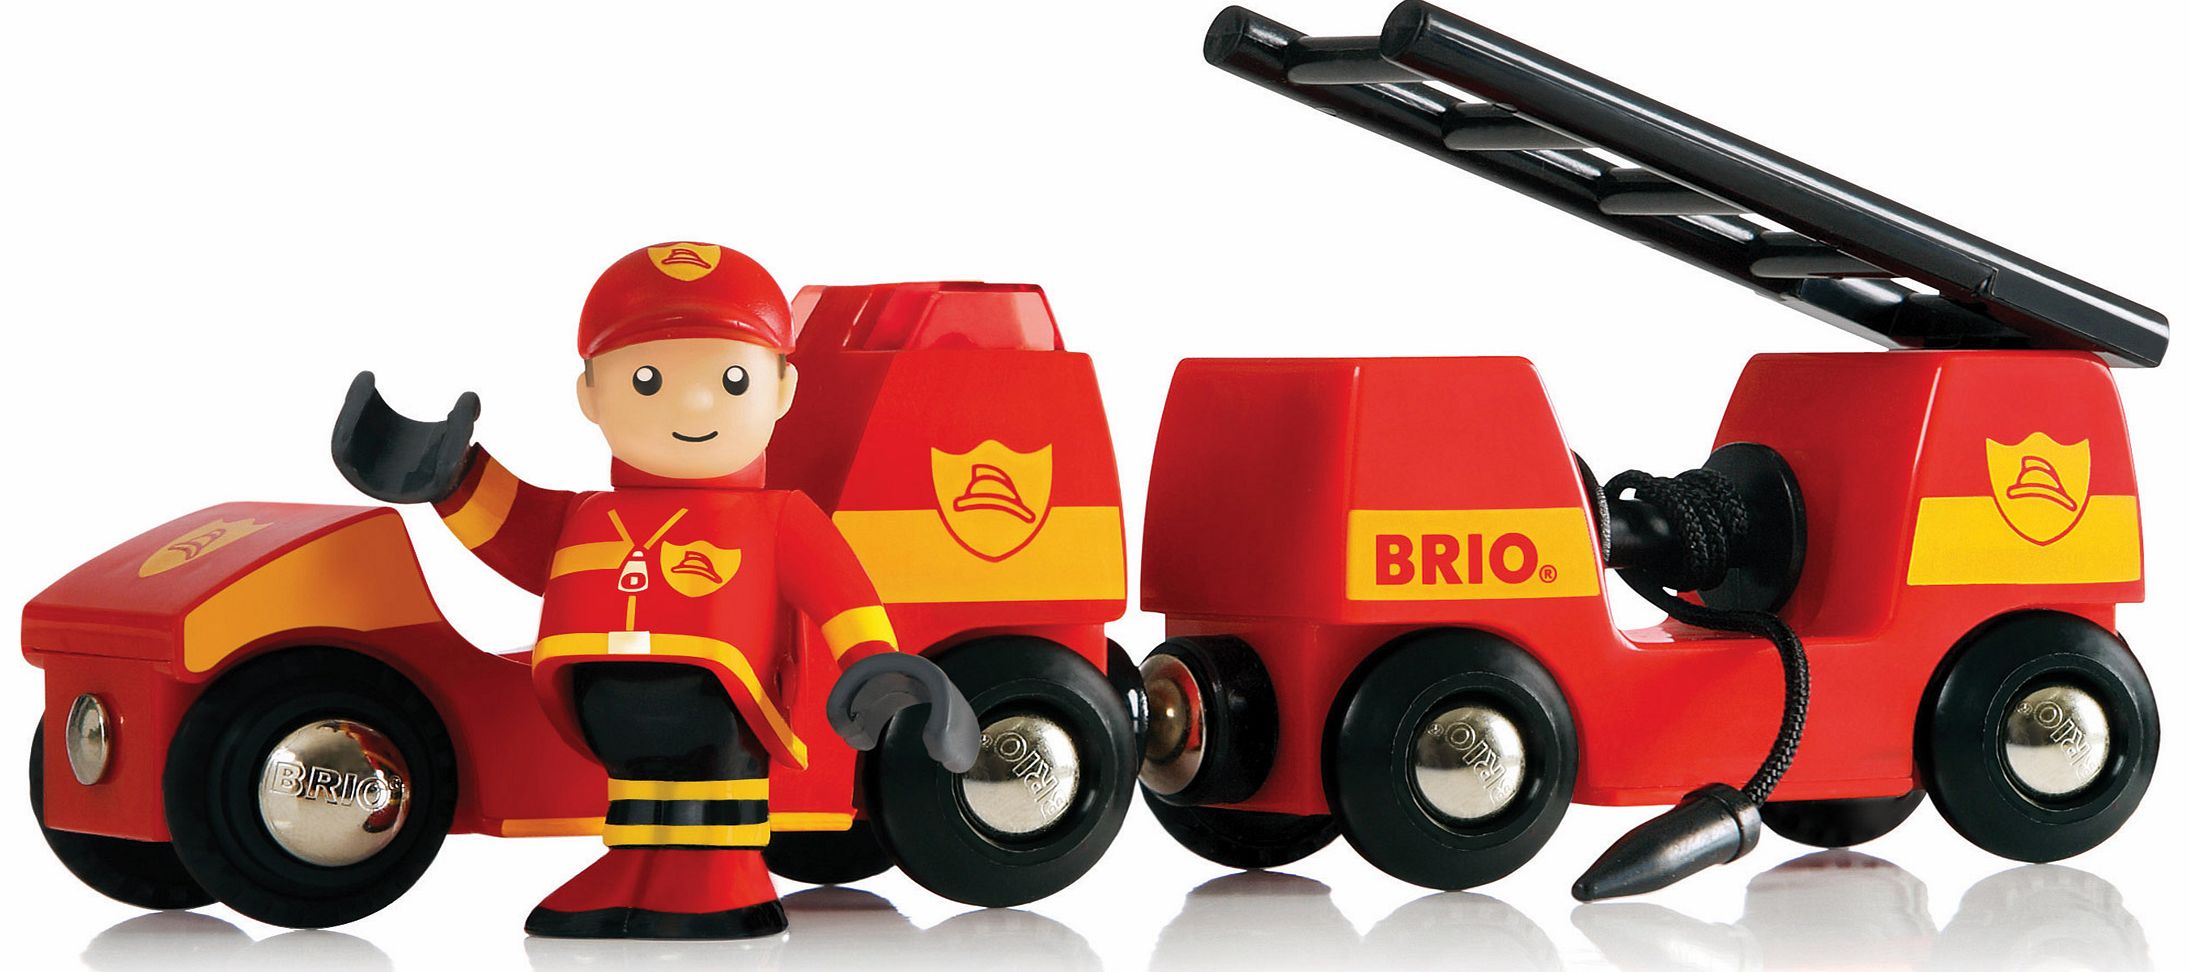 BRIO Light and Sound Fire Engine